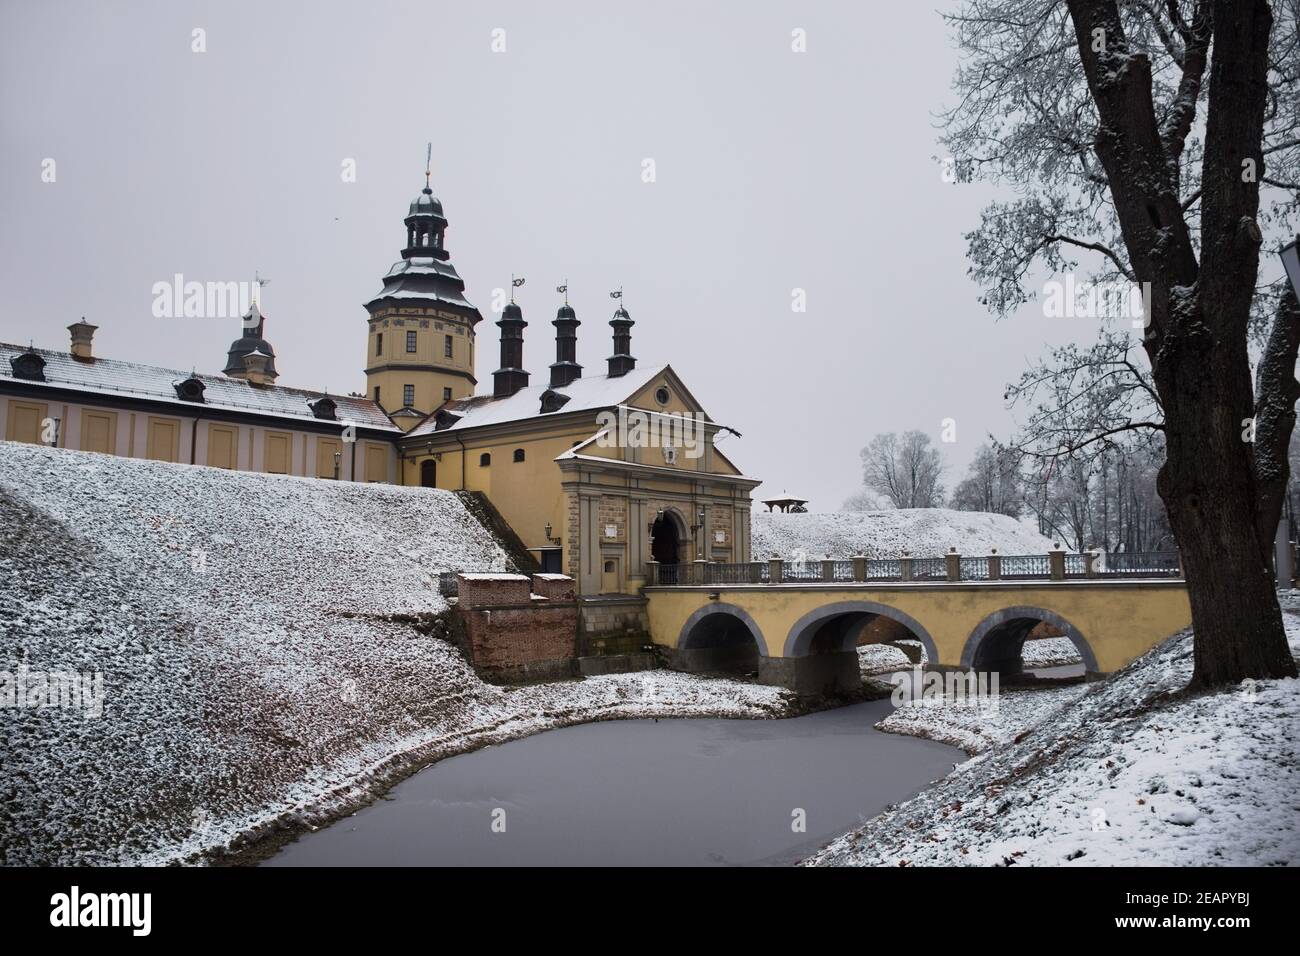 Nesvizh castle in winter Stock Photo